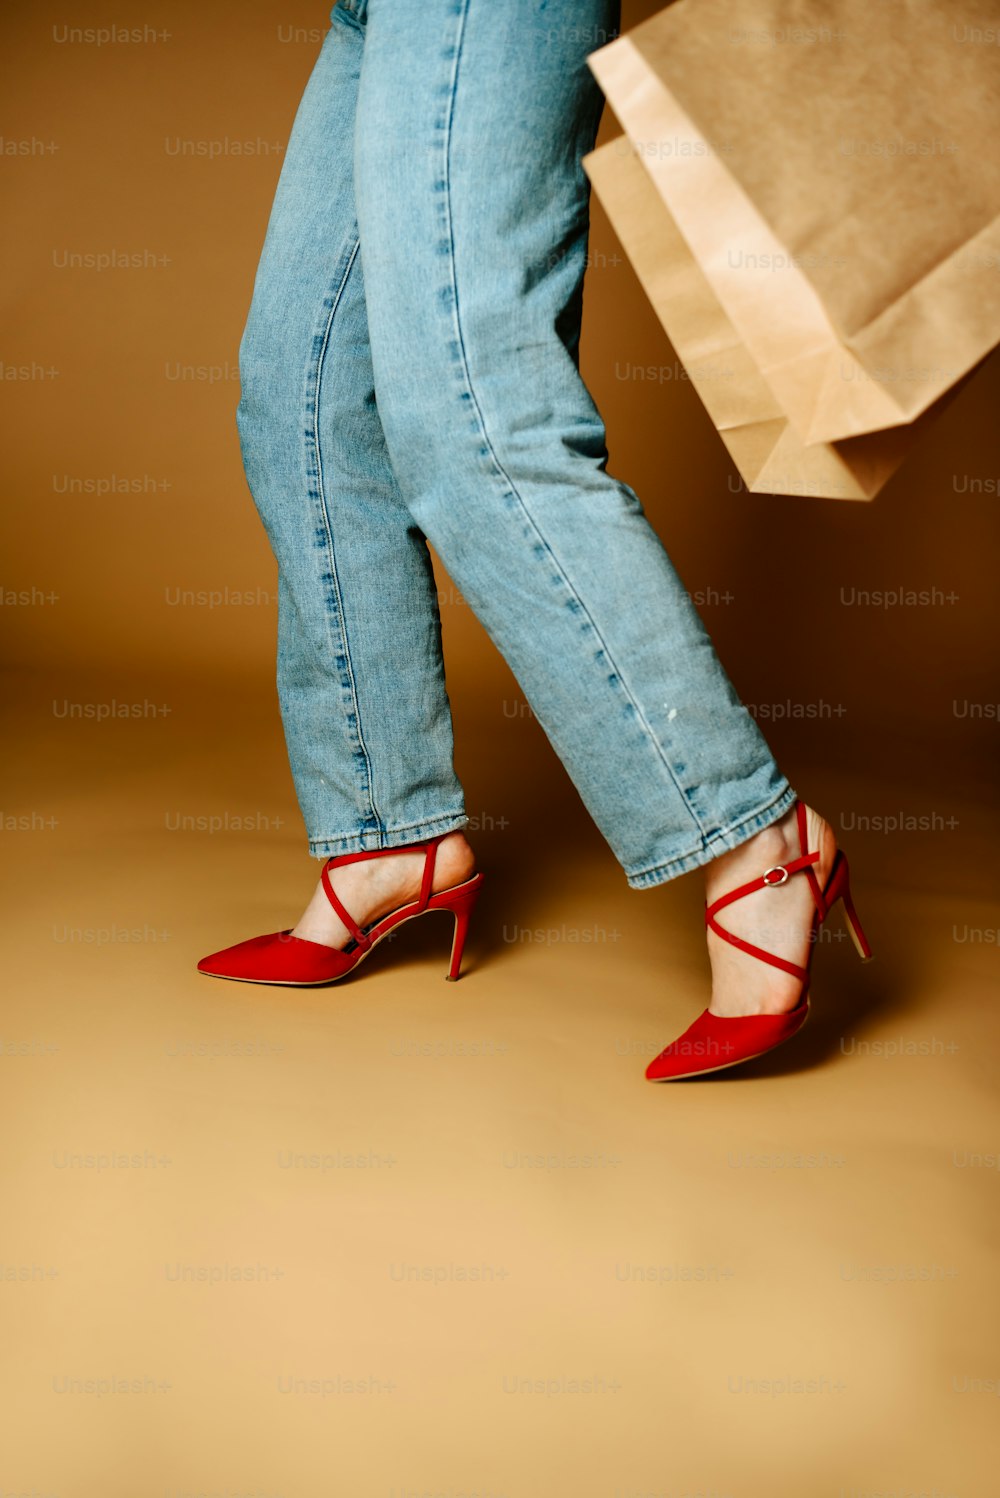 Las piernas de una mujer con tacones altos sosteniendo una bolsa de compras